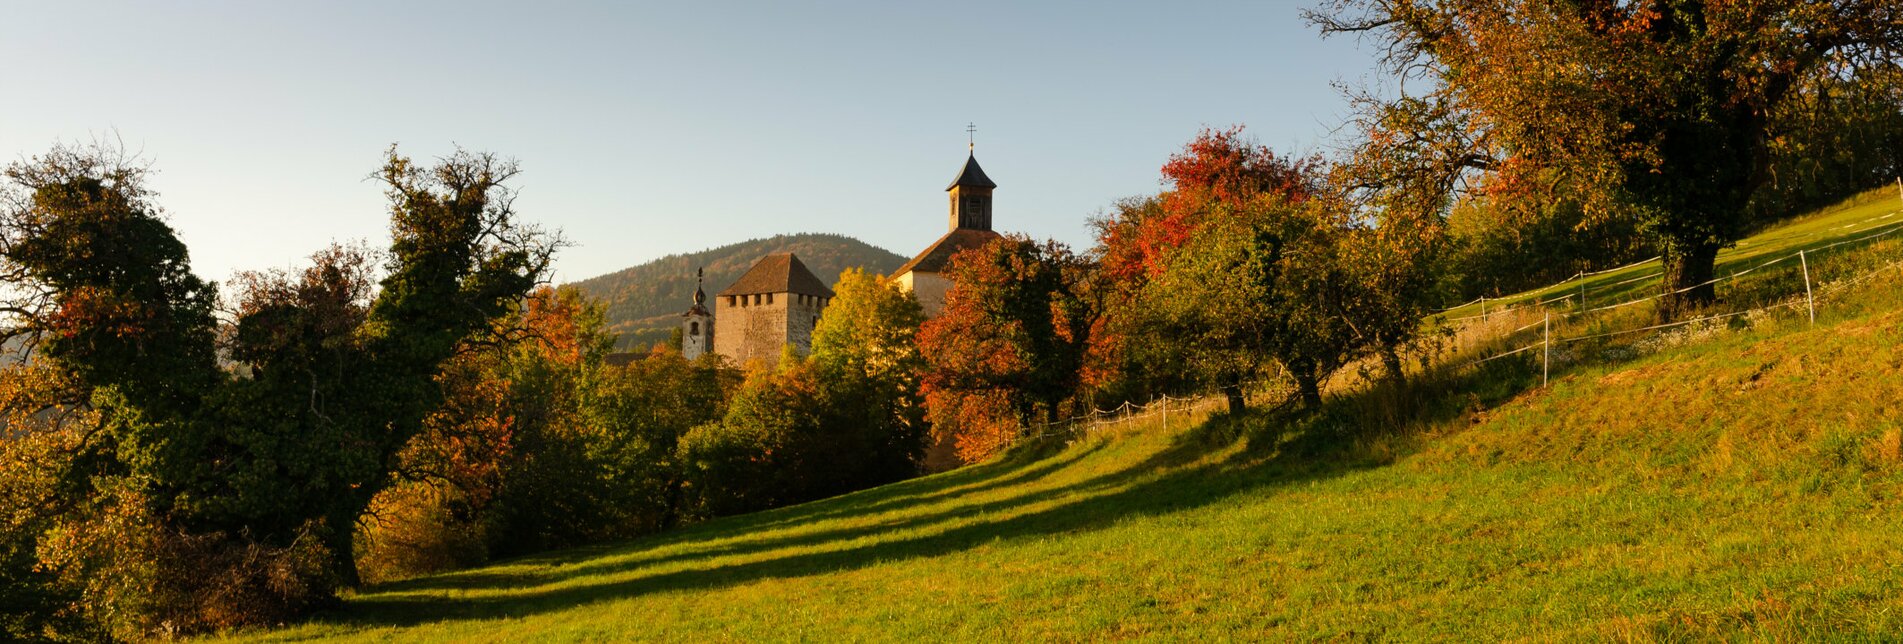 Burg Neuberg und Obstbäume im Herbst | © TV Oststeiermark | Bernhard Bergmann